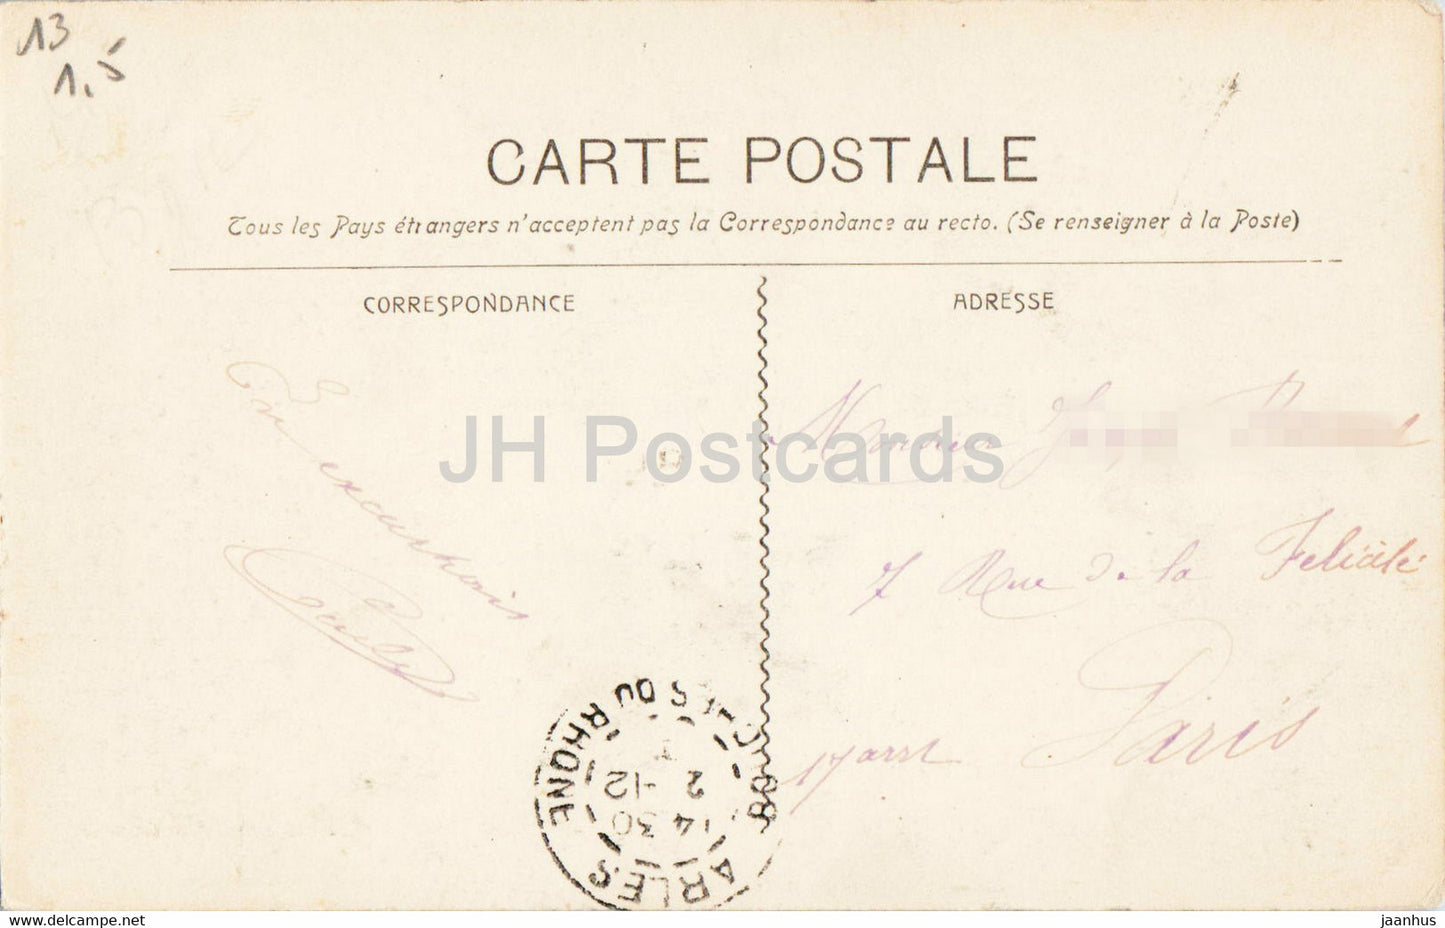 Arles - Intérieur des Arènes - 703 - carte postale ancienne - France - occasion